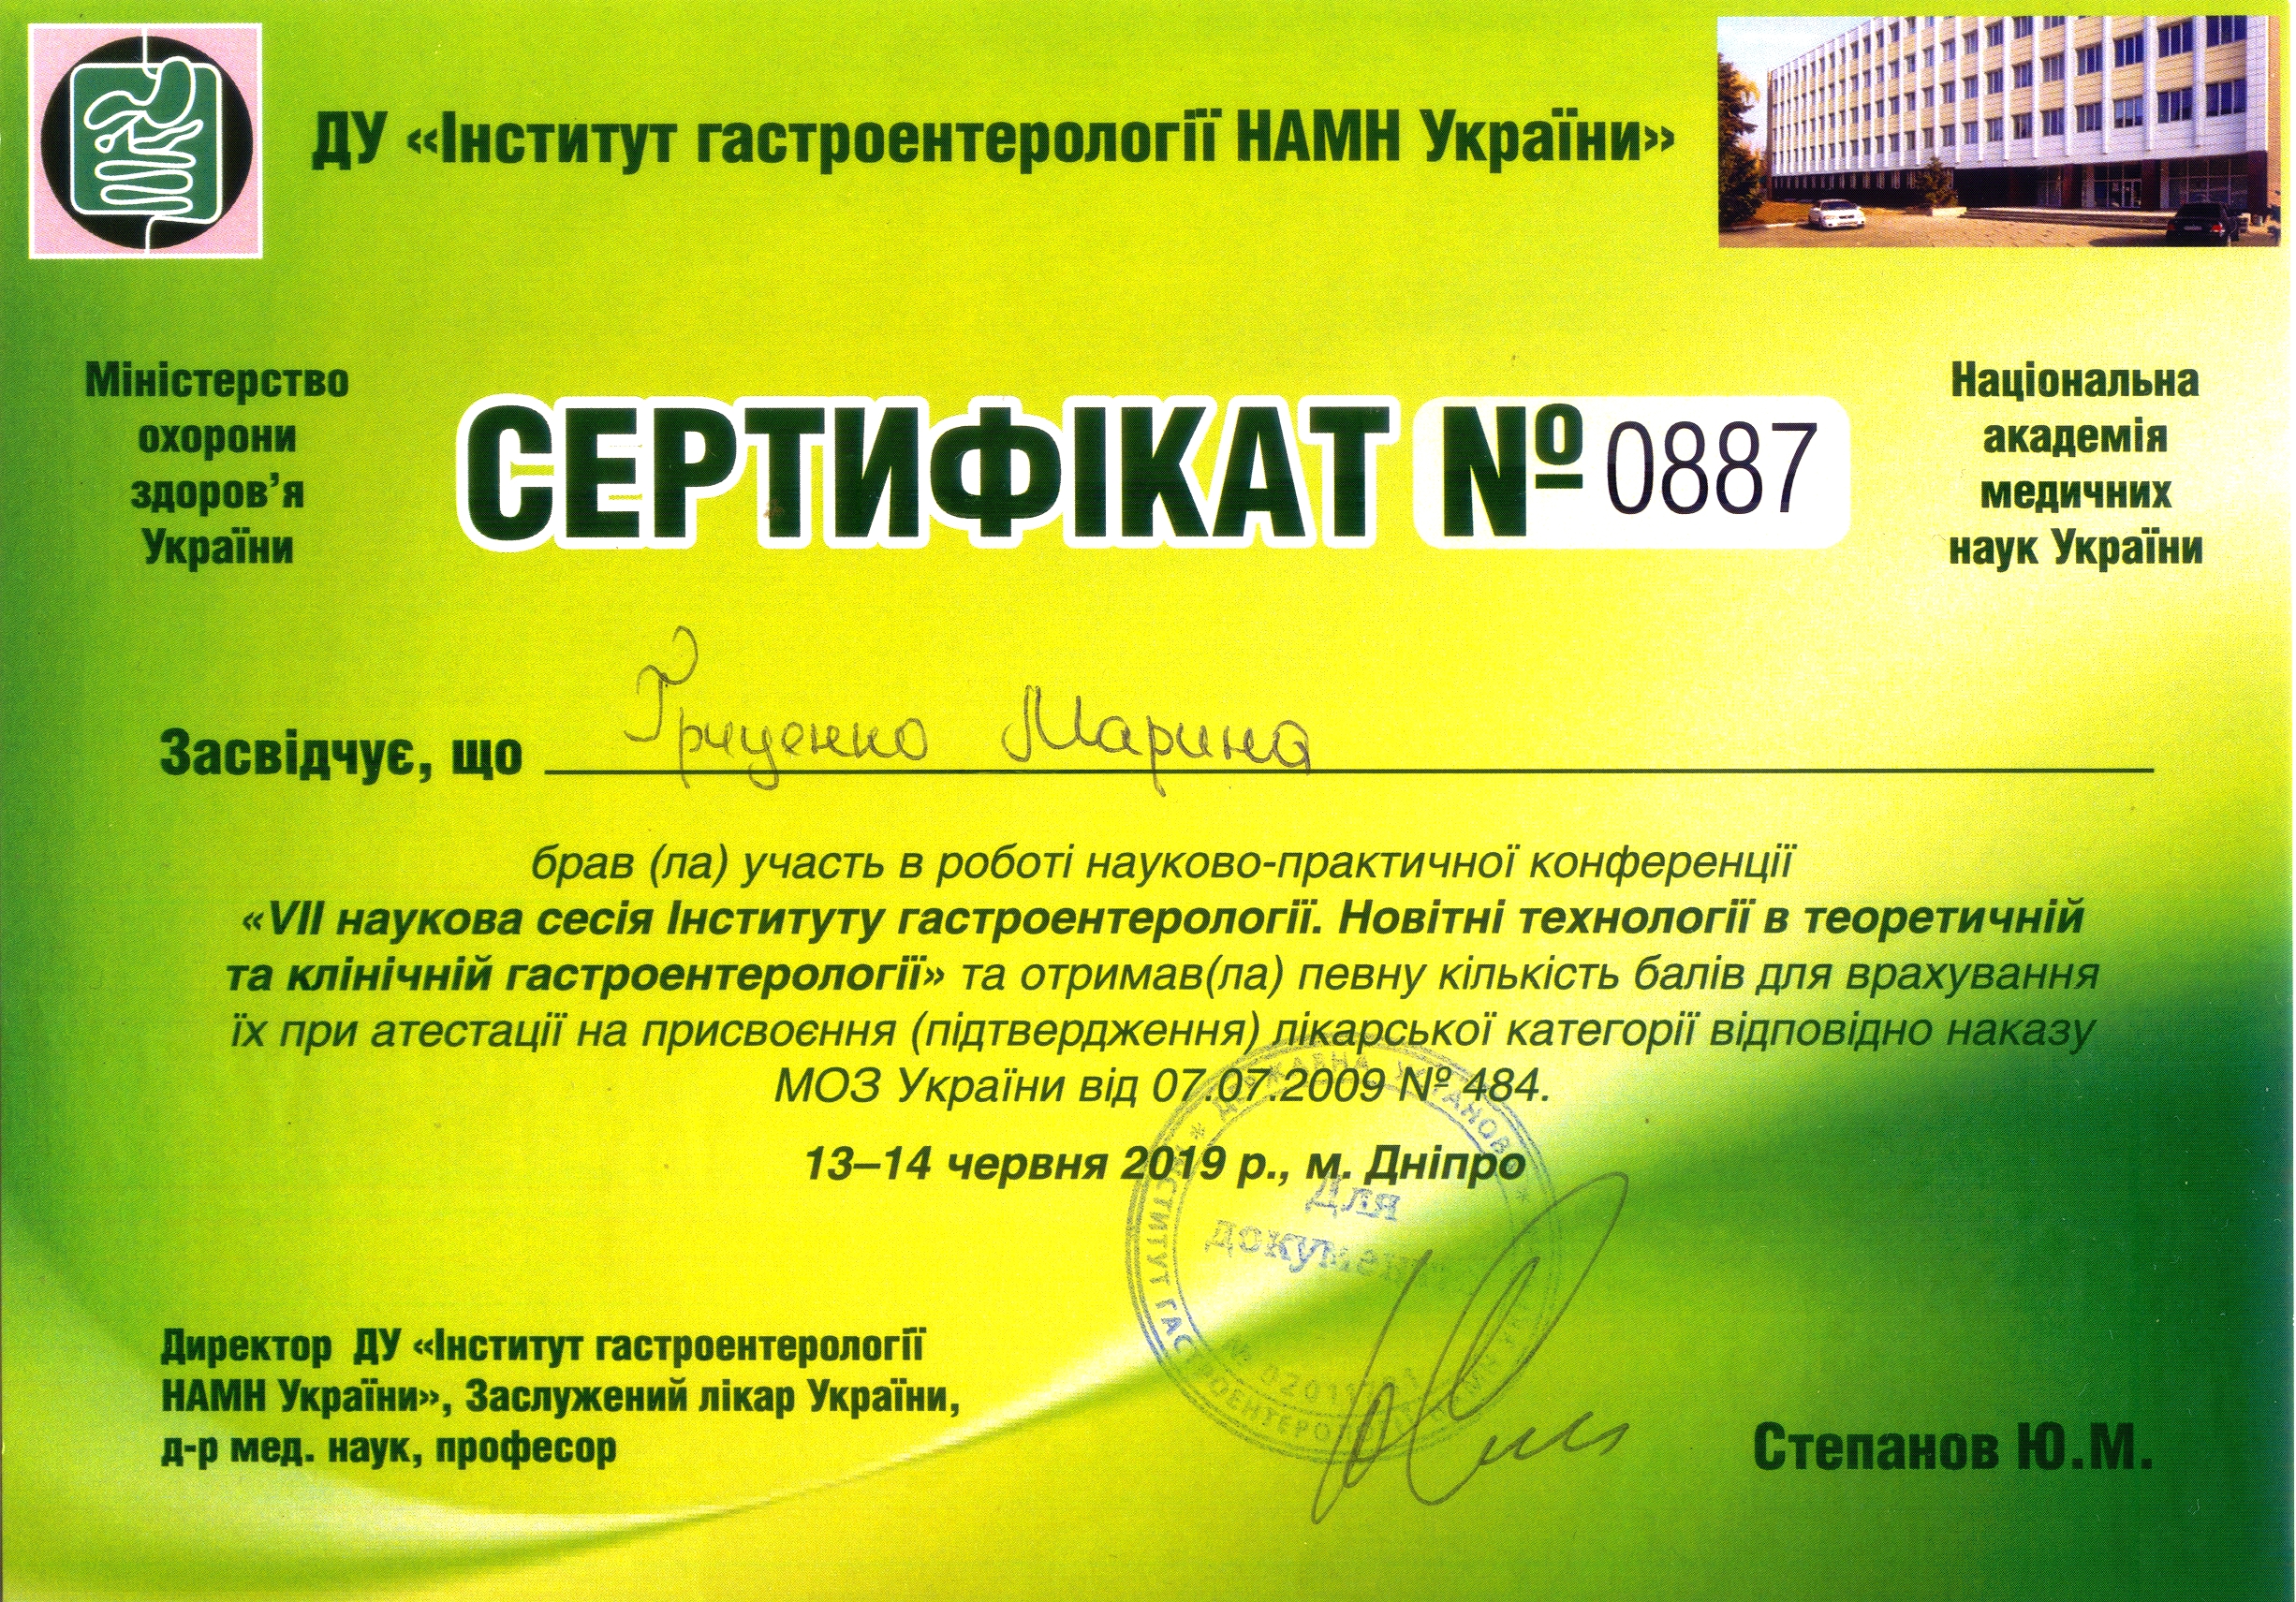 Сертифiкат Гриценко  №0887 ДУ IГНАМНУ